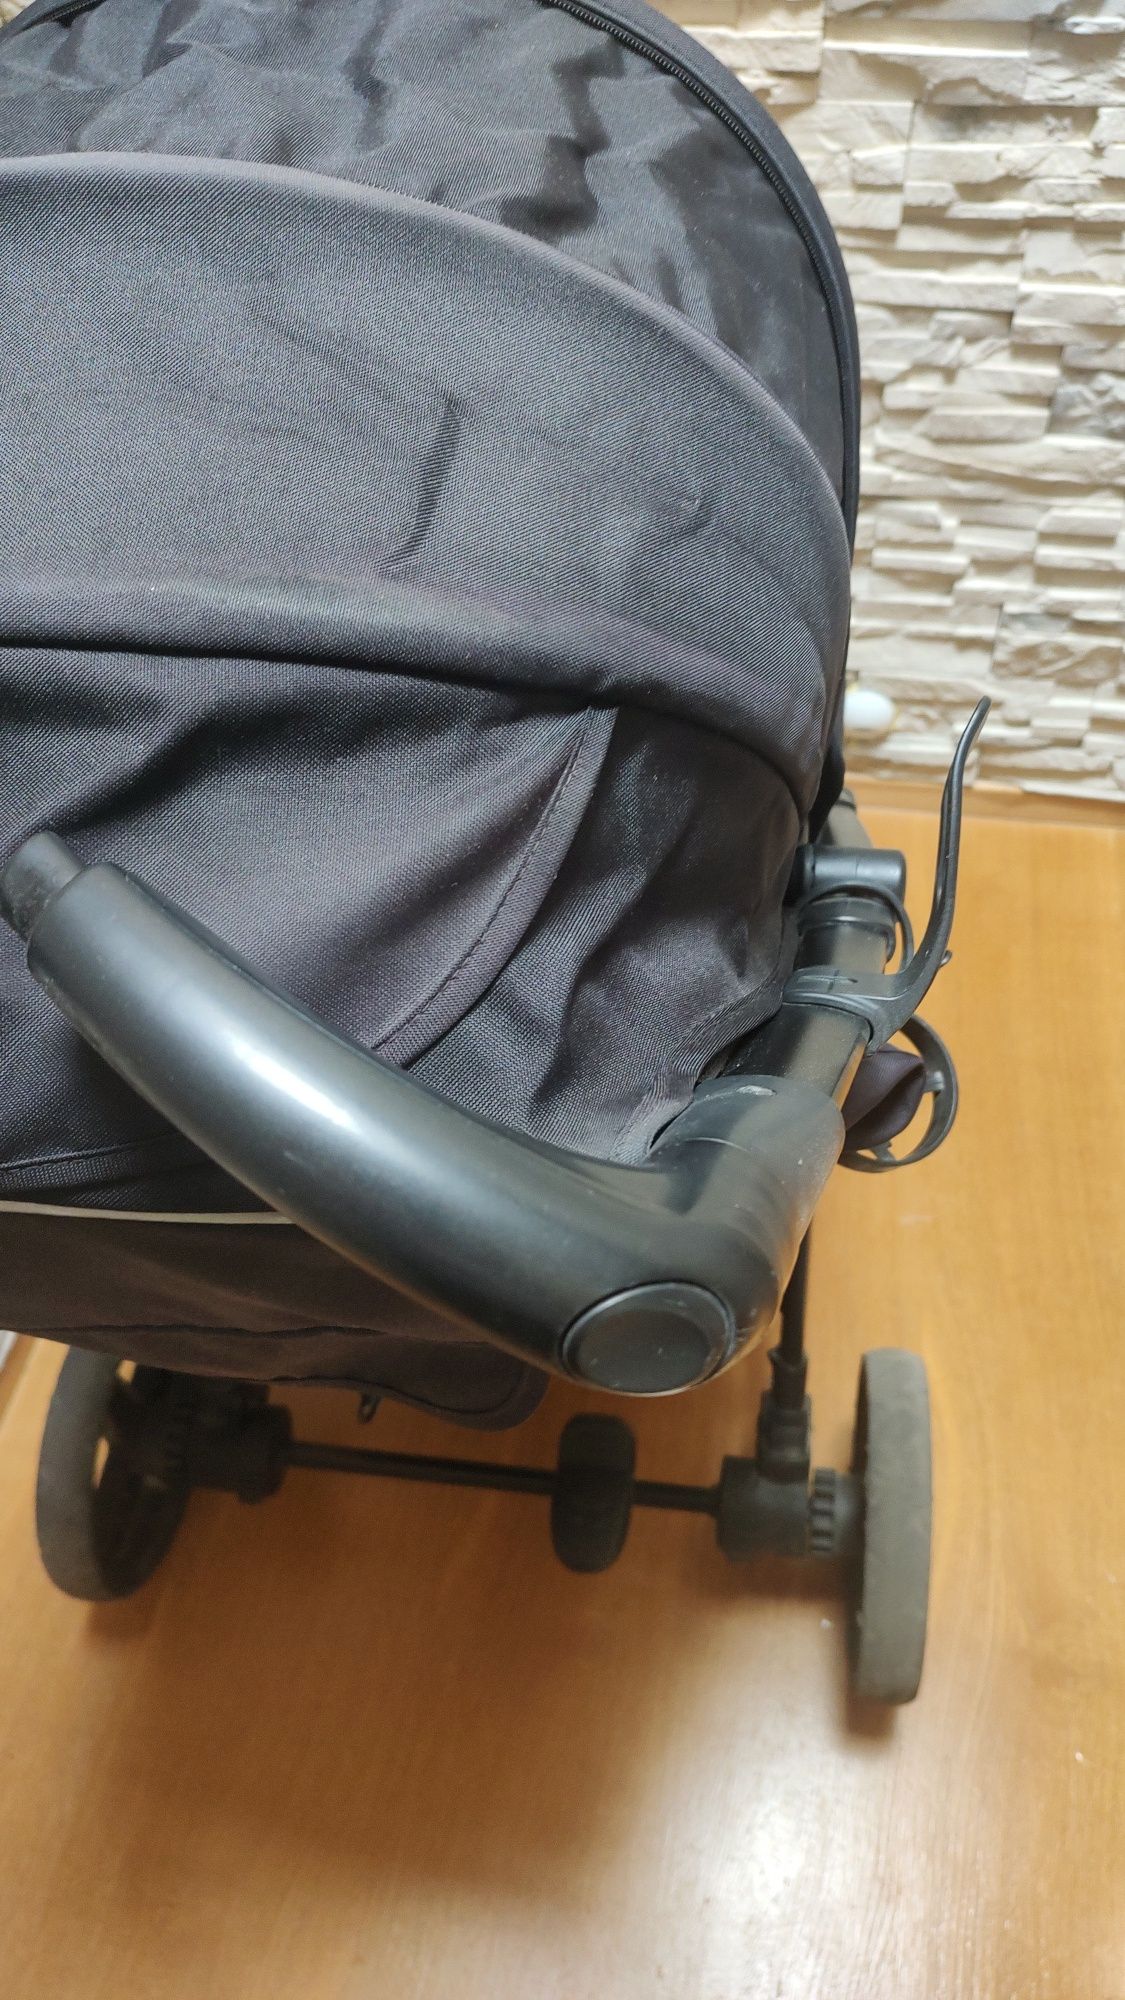 Spacerówka wózek dla dziecka caretero titan czarna parasolka duży wóze